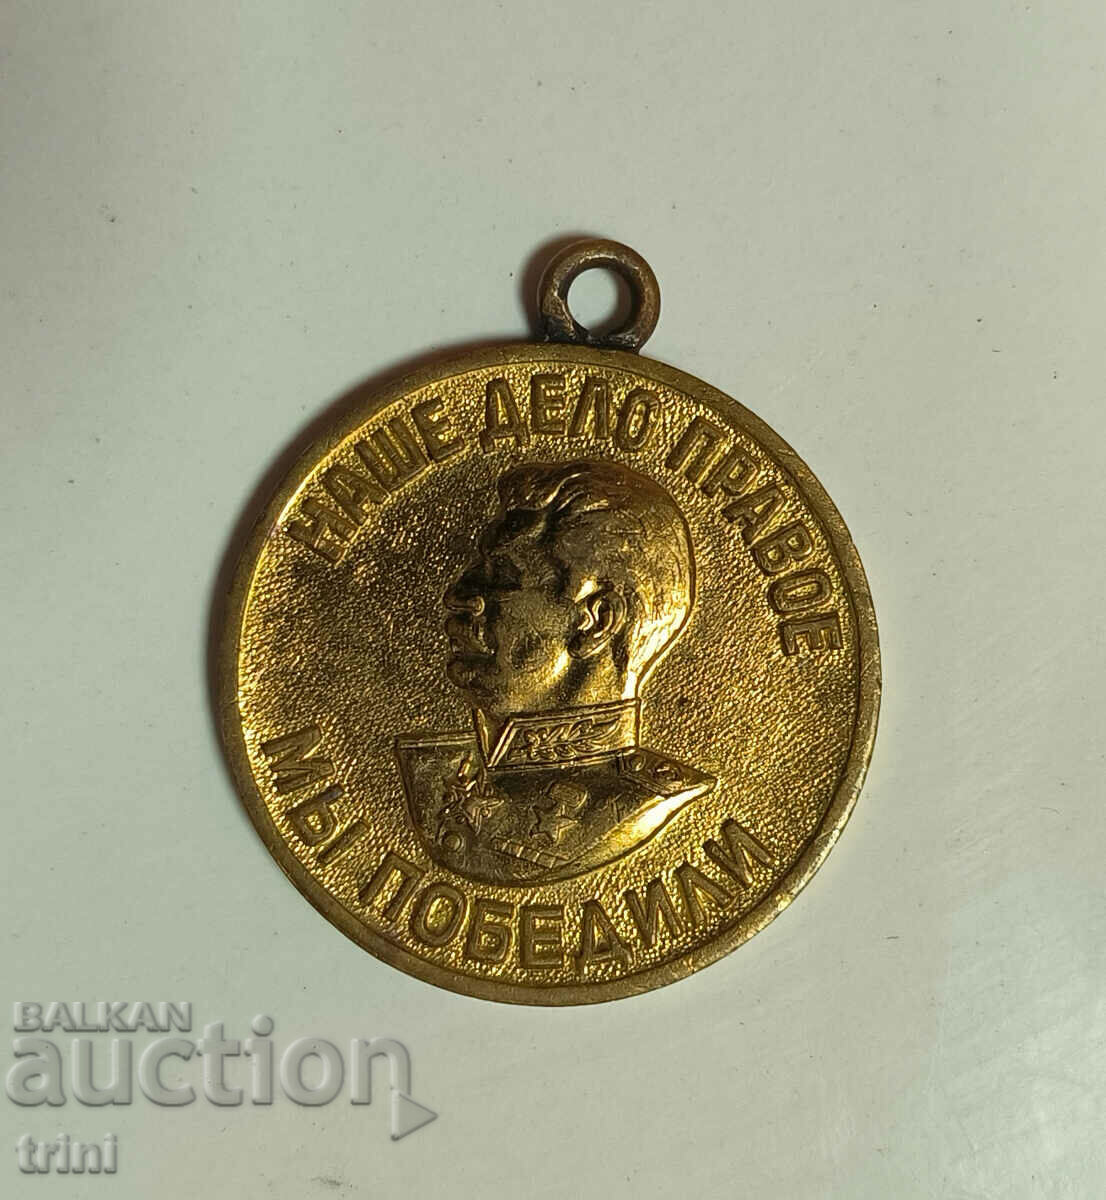 Medalia Victoriei asupra Germaniei în al doilea război mondial, dreptatea noastră